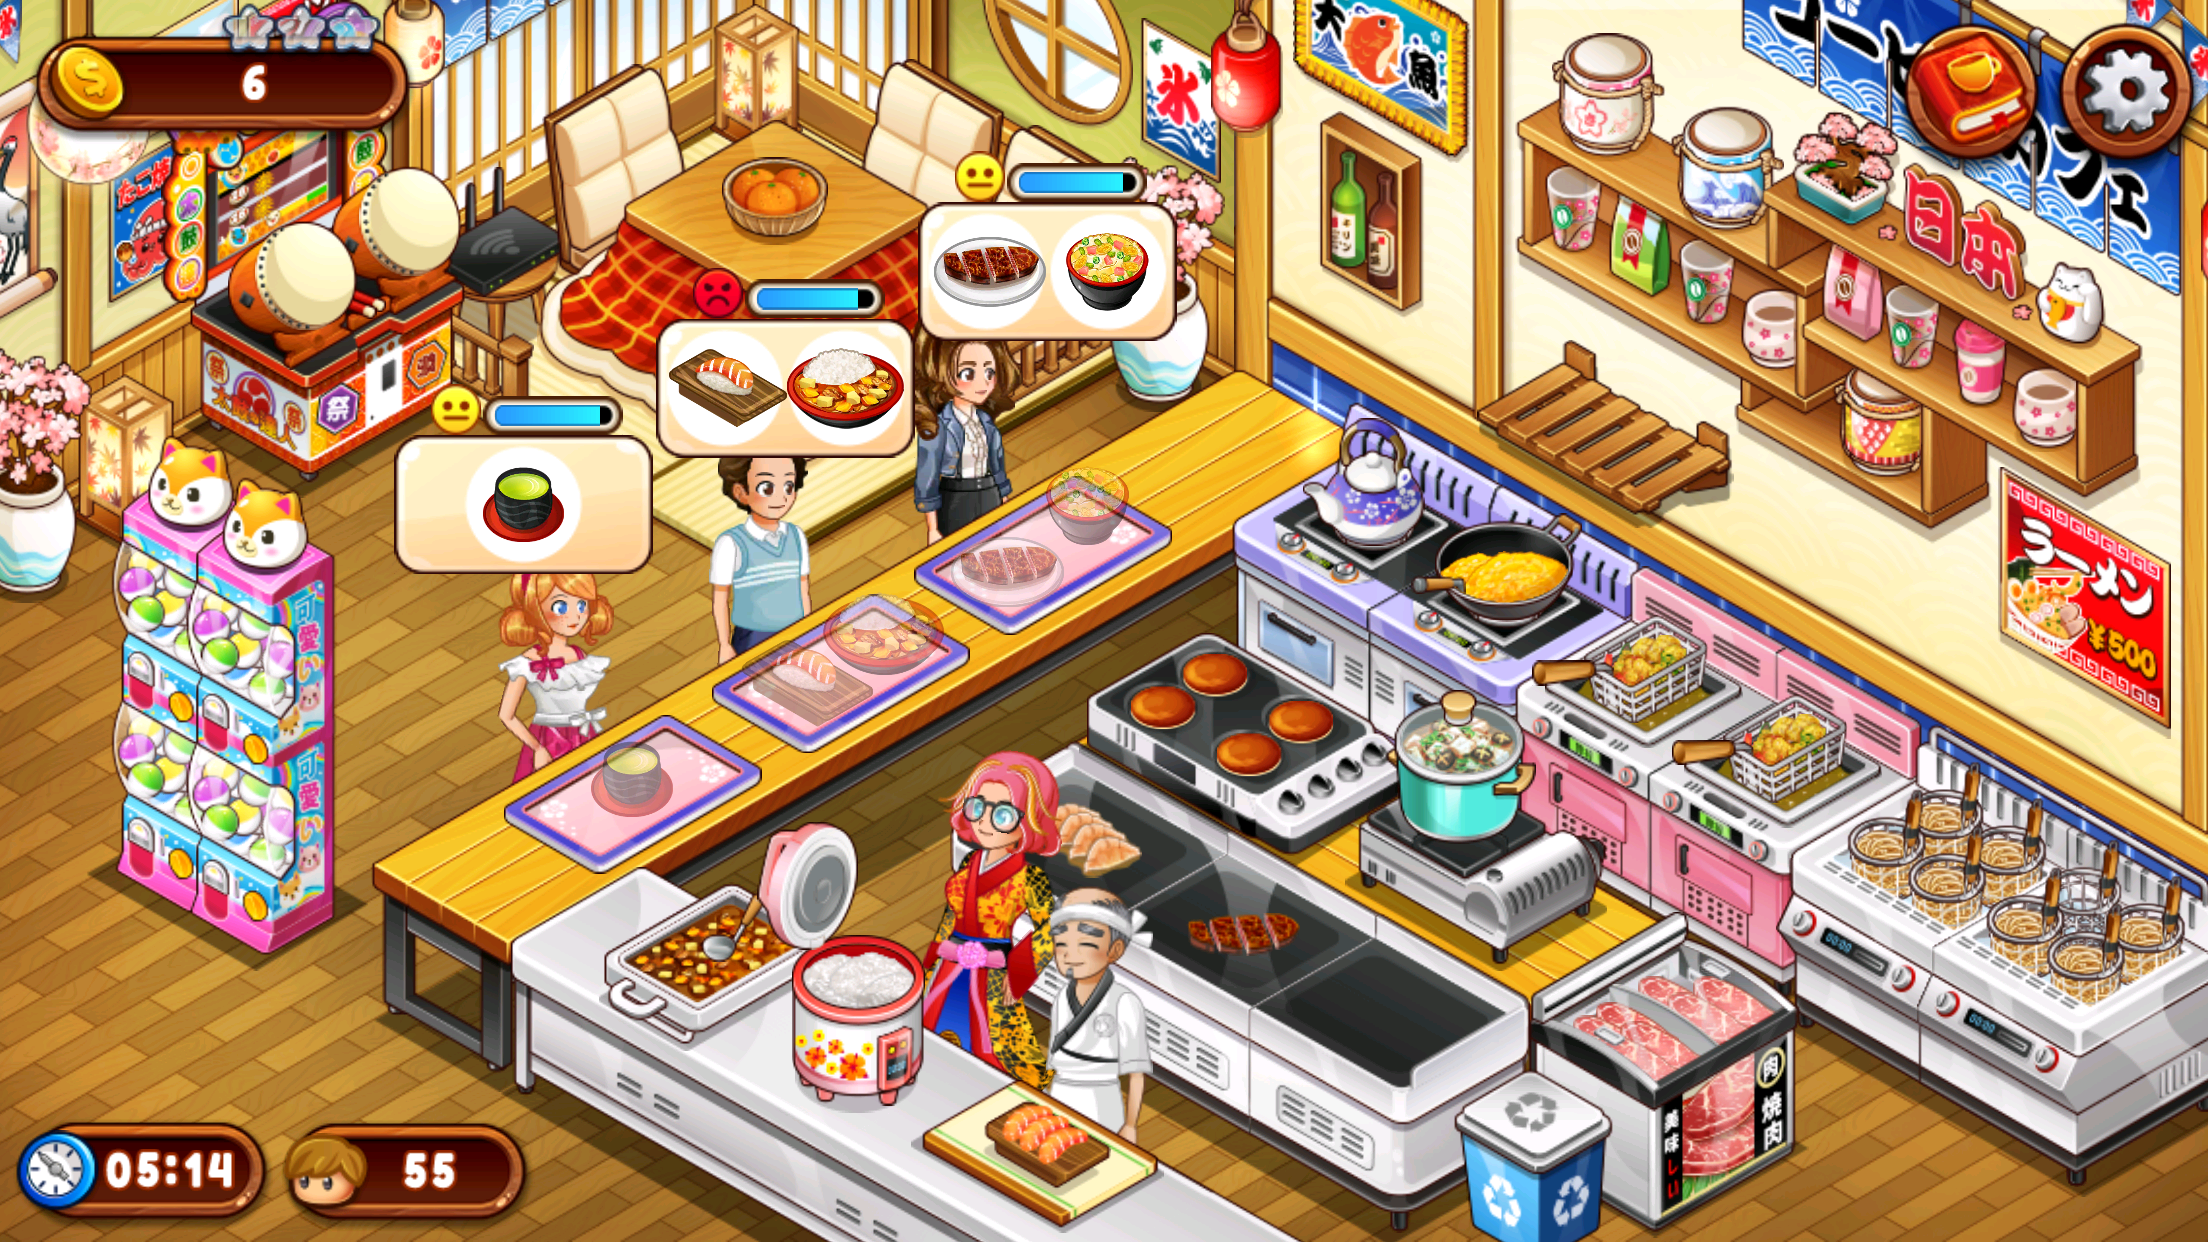 Screenshot 1 of Panik Kafe: Permainan memasak 1.51.0a